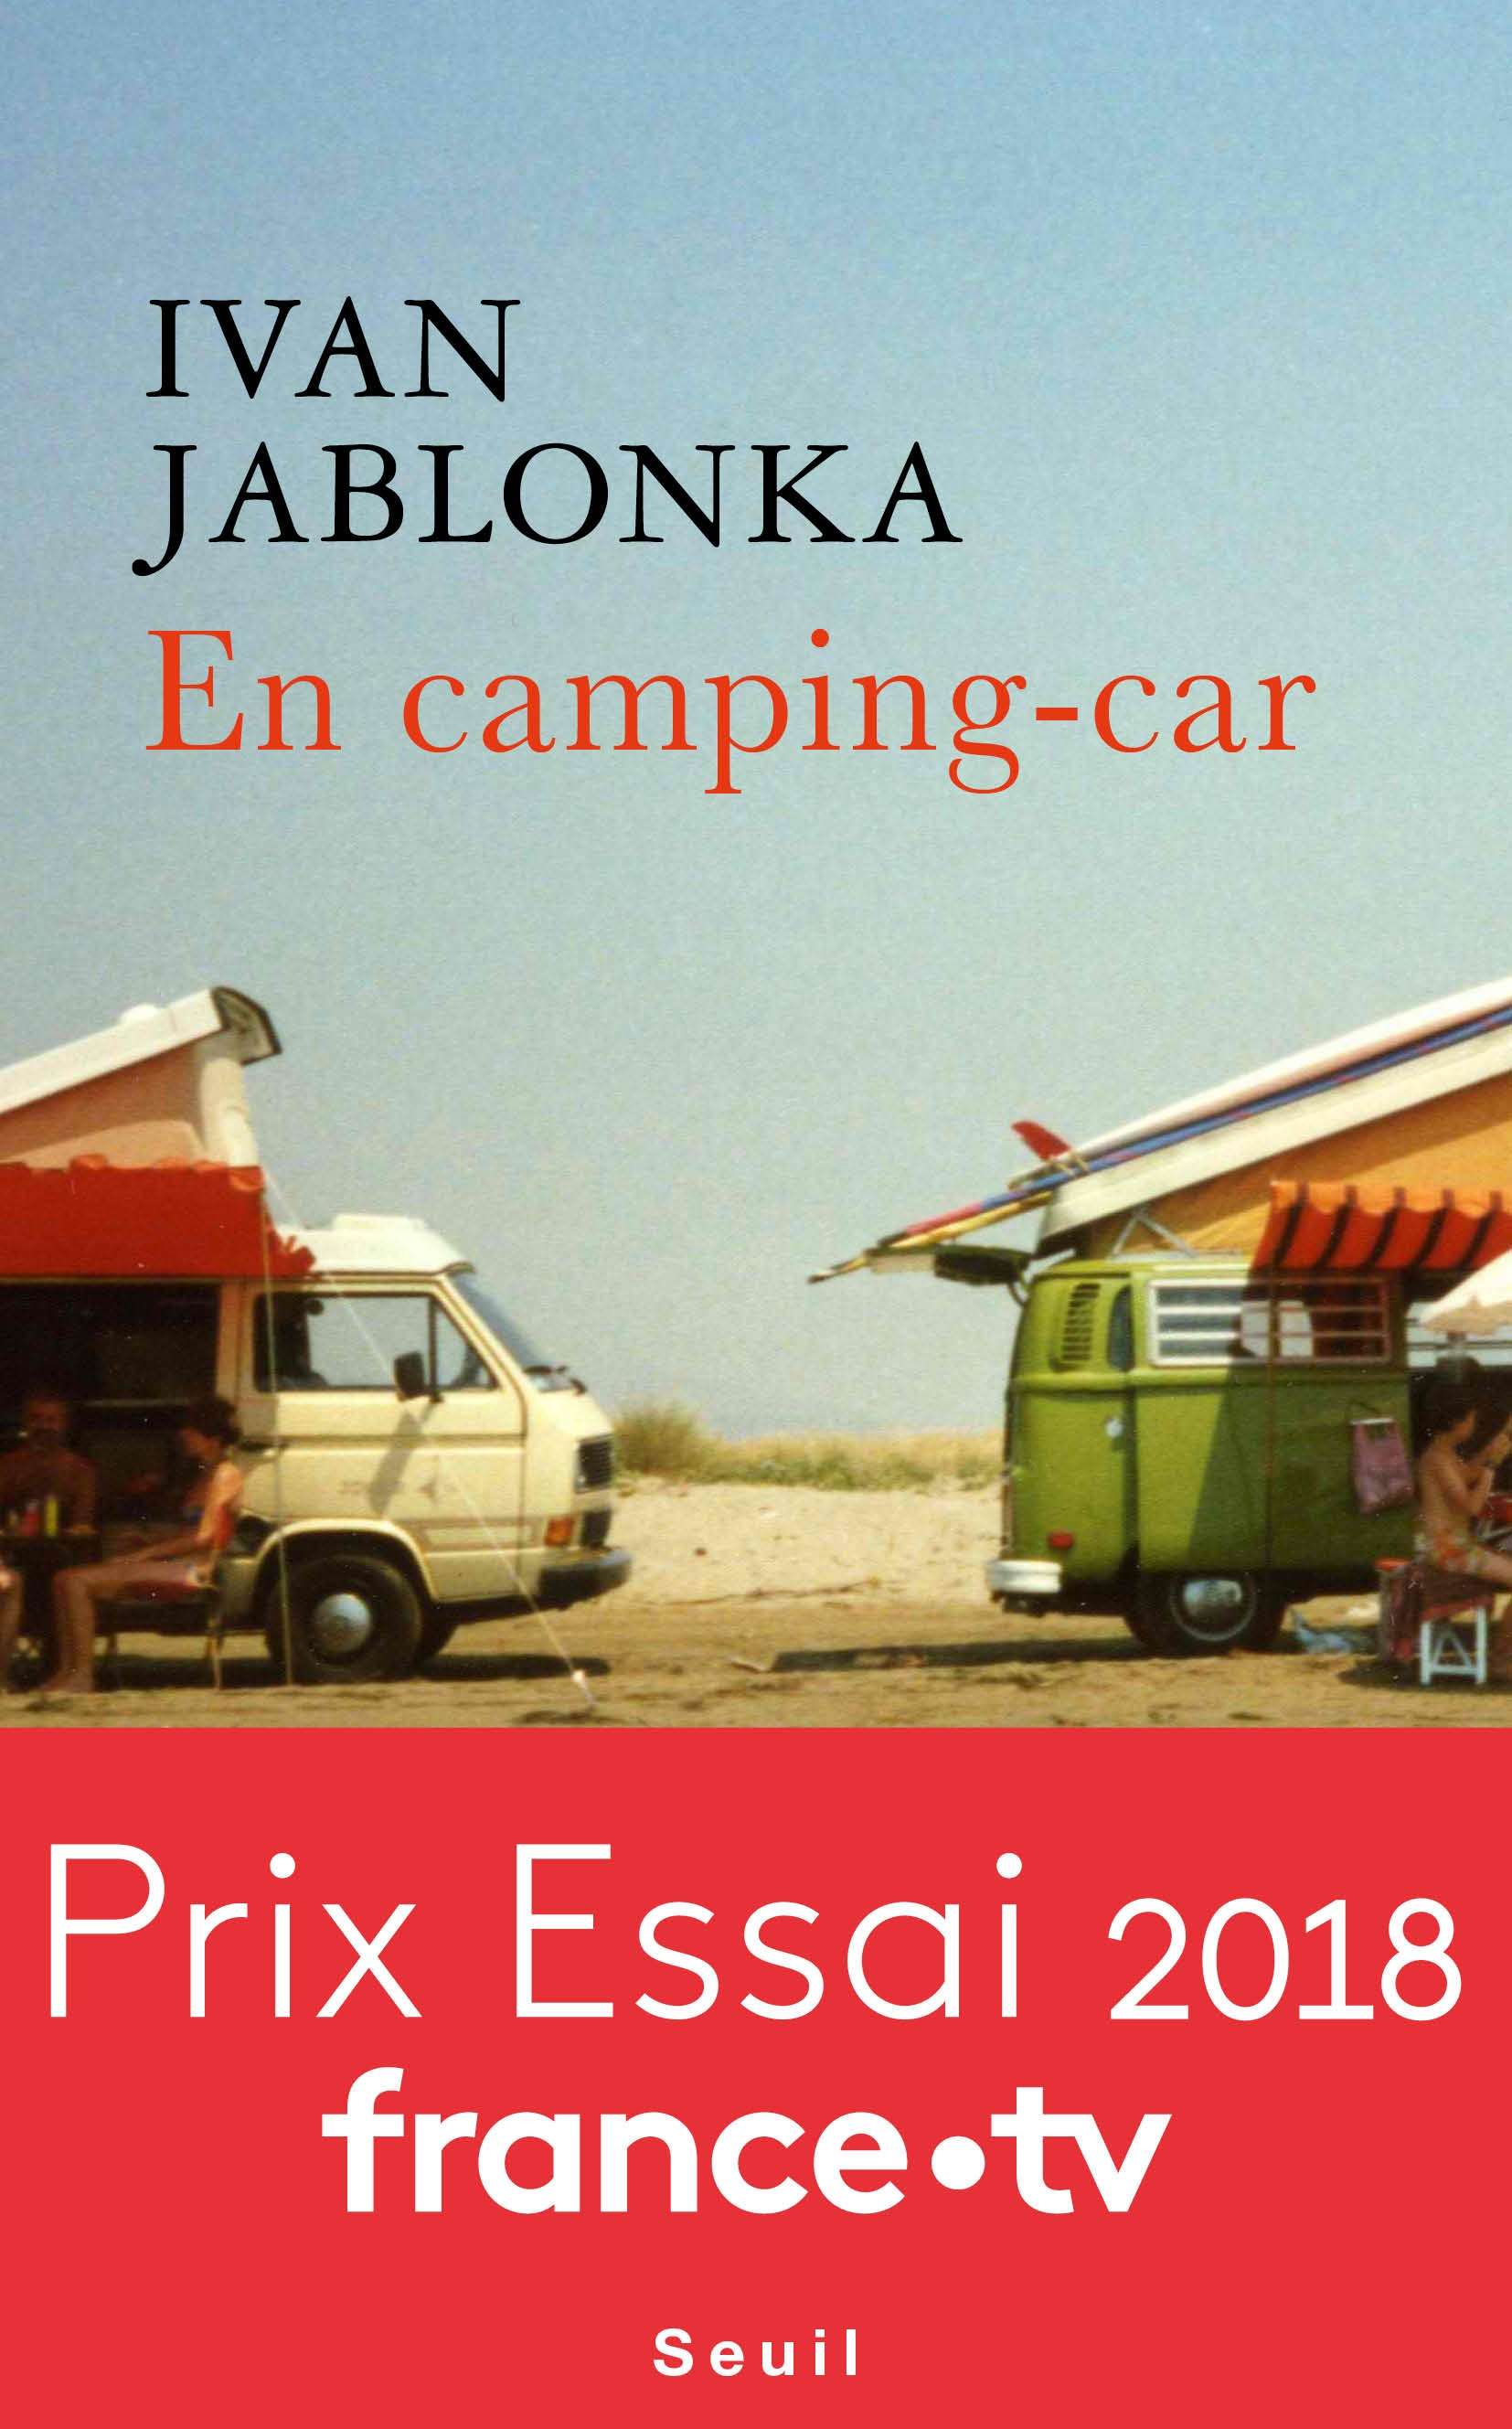 couverture_ivan_jablonka_-_en_camping-car.jpg